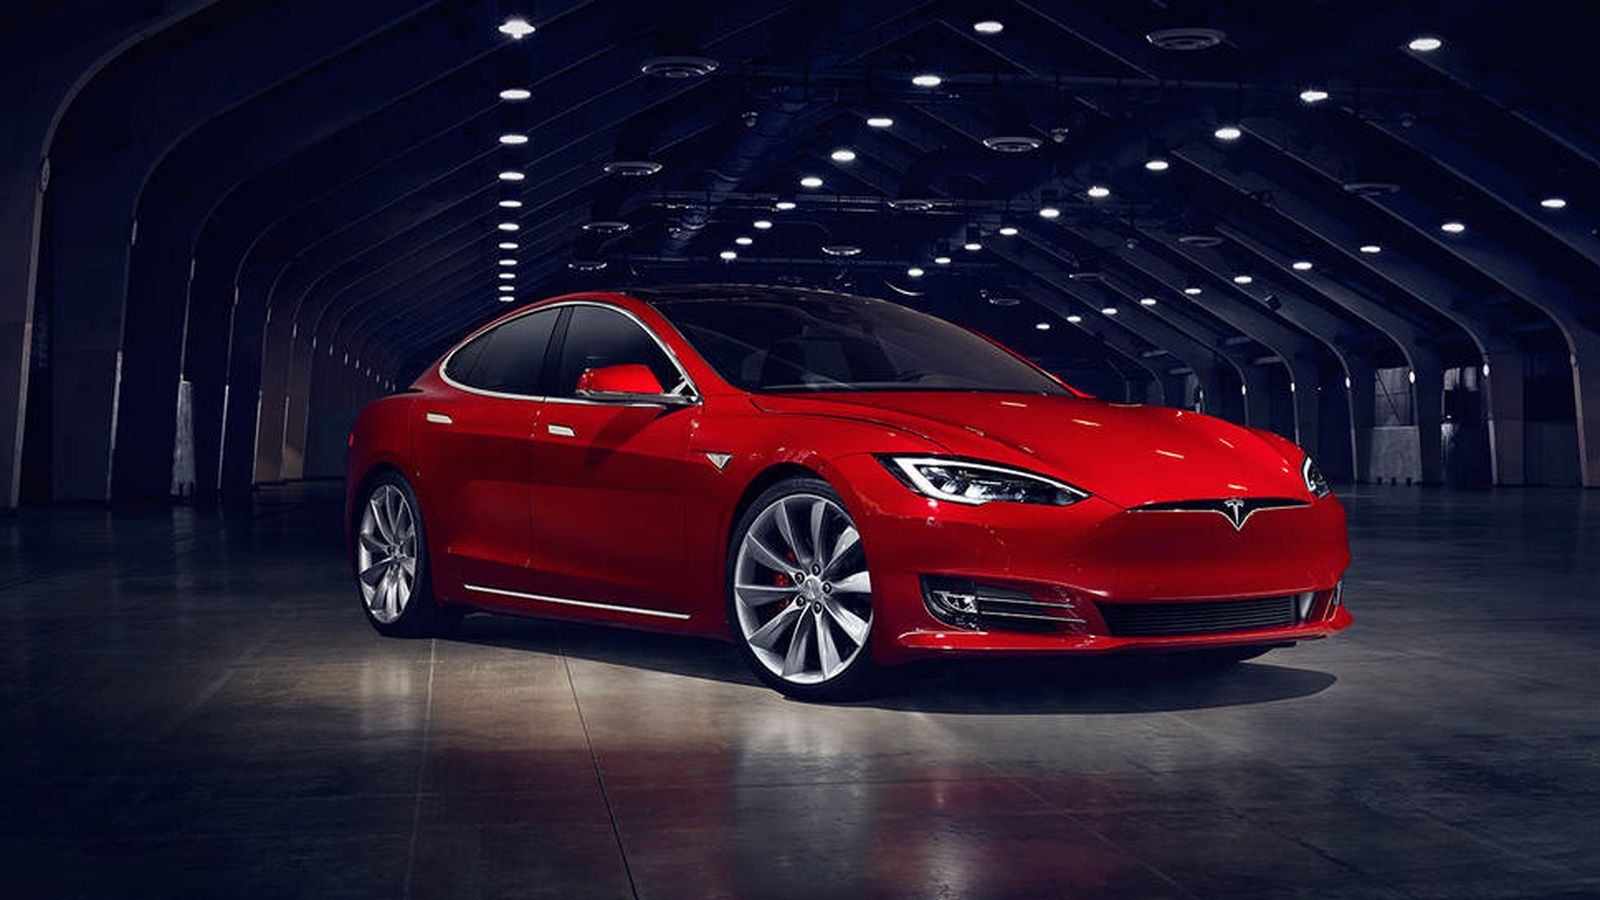 Foto: El Tesla Model S, que ahora se actualiza con un nuevo modelo, el S P100D. (Imagen: Tesla)